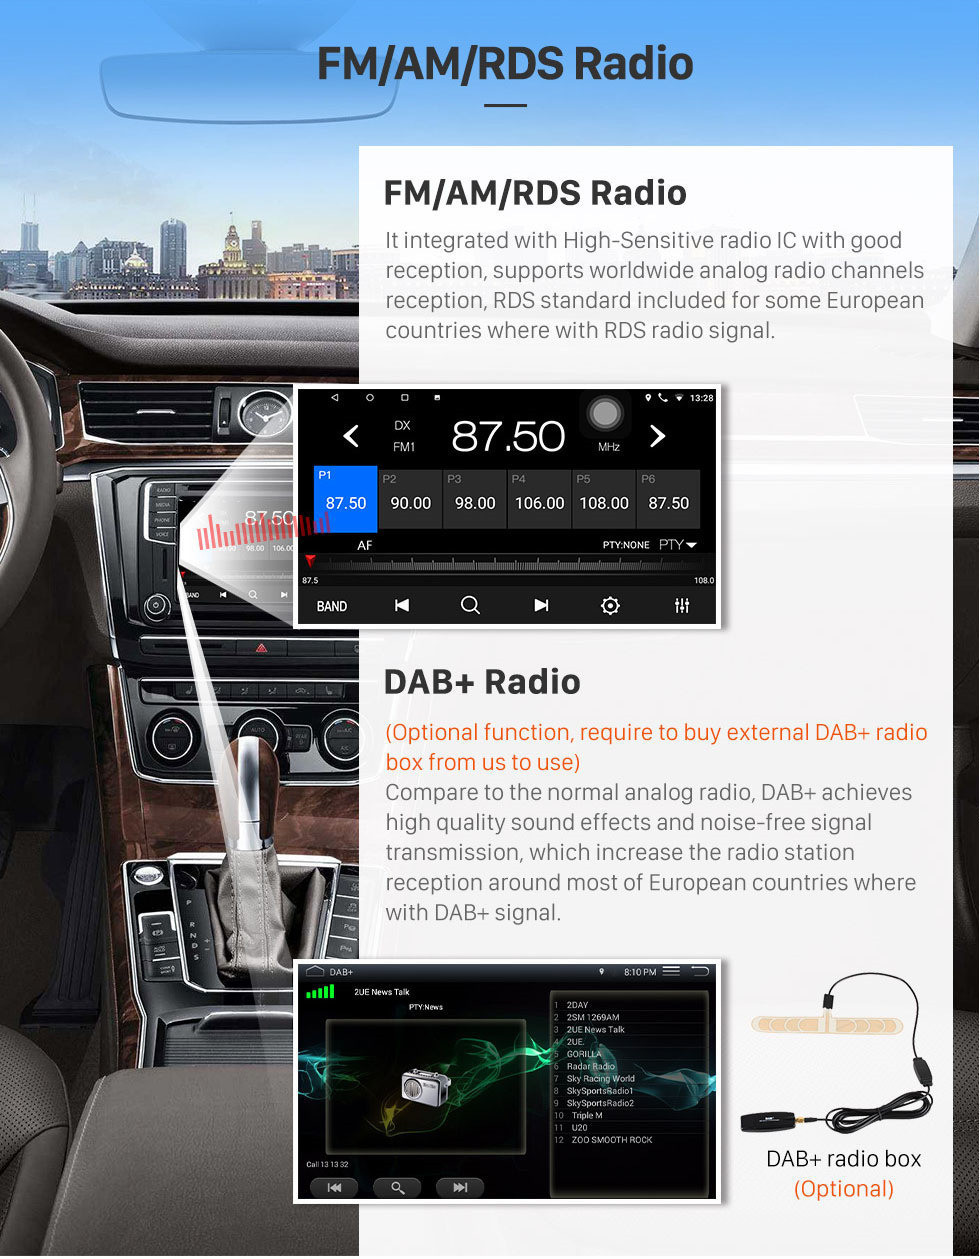 Seicane 9 pulgadas Android 10.0 sistema de navegación GPS Radio de pantalla táctil Para 2010-2014 Toyota corona antigua LHD Bluetooth PMS DVR OBD II USB Cámara trasera Control del volante